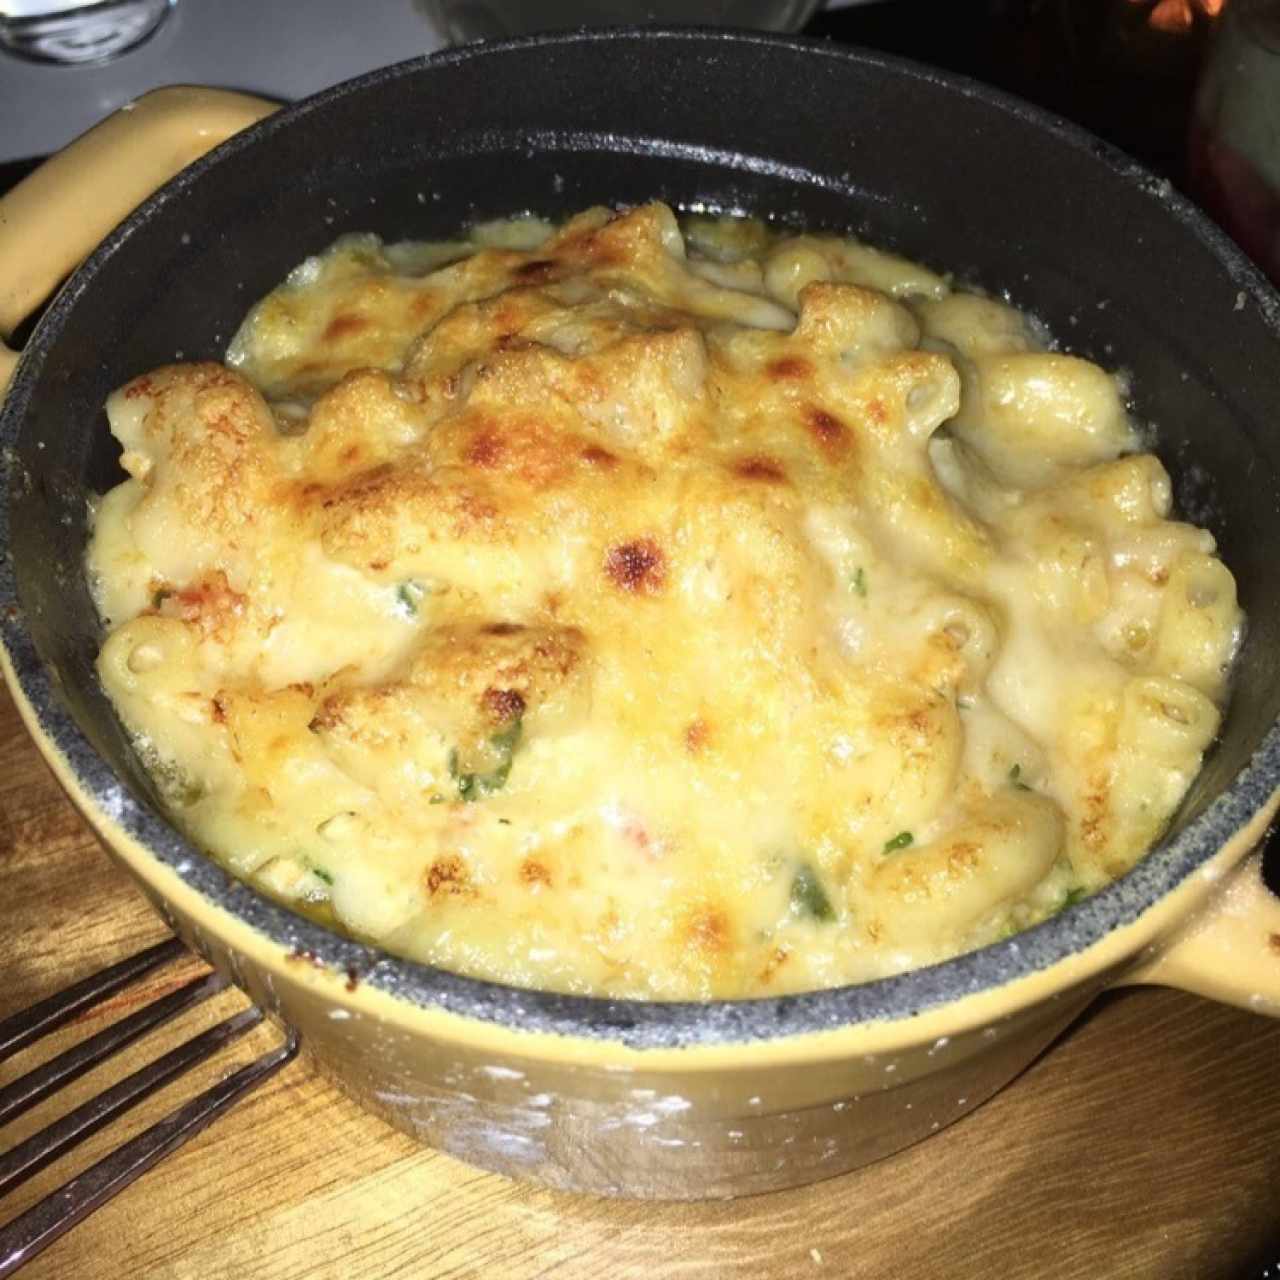 Lobster mac & cheese